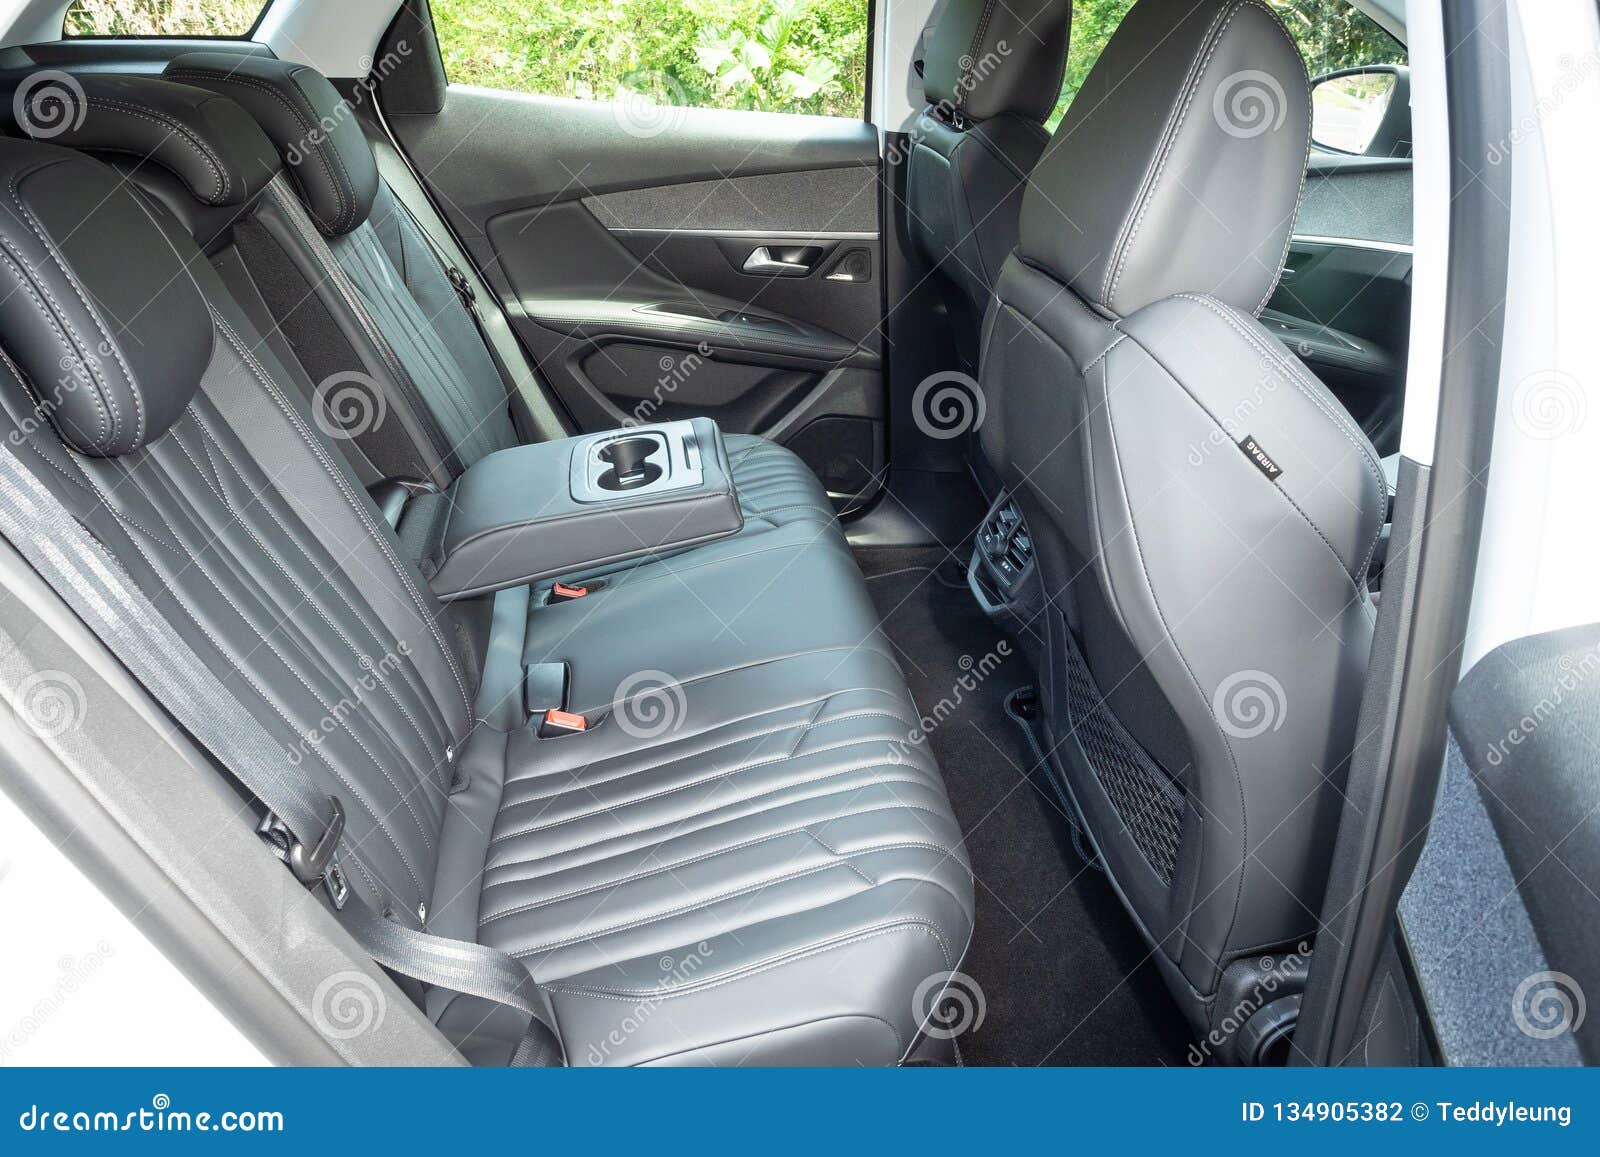 3008 Peugeot Interior